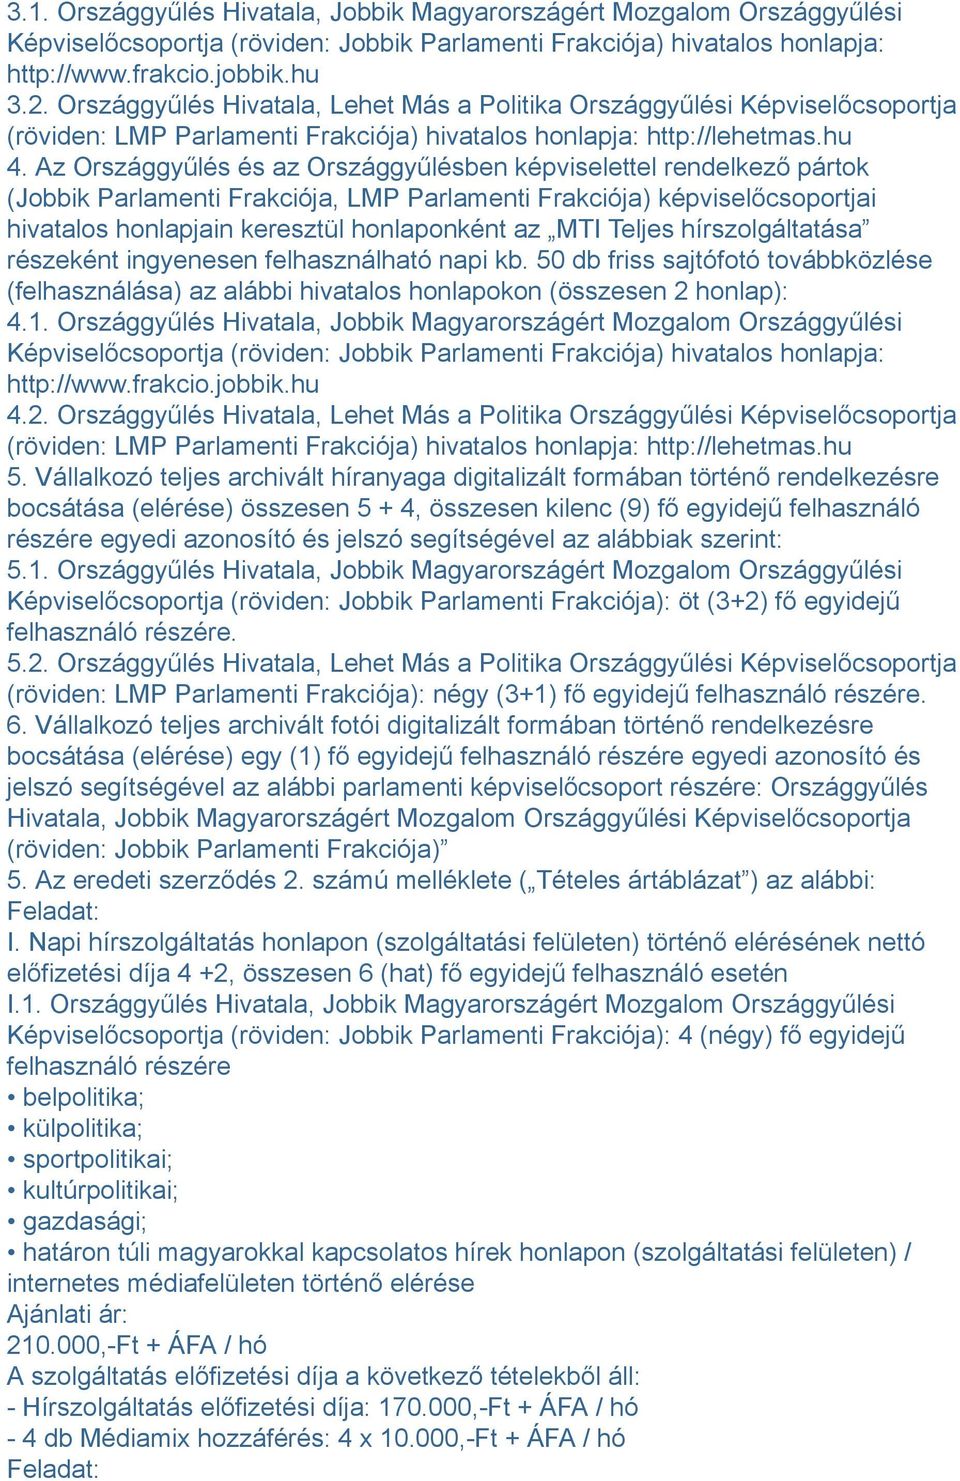 Az Országgyűlés és az Országgyűlésben képviselettel rendelkező pártok (Jobbik Parlamenti Frakciója, LMP Parlamenti Frakciója) képviselőcsoportjai hivatalos honlapjain keresztül honlaponként az MTI